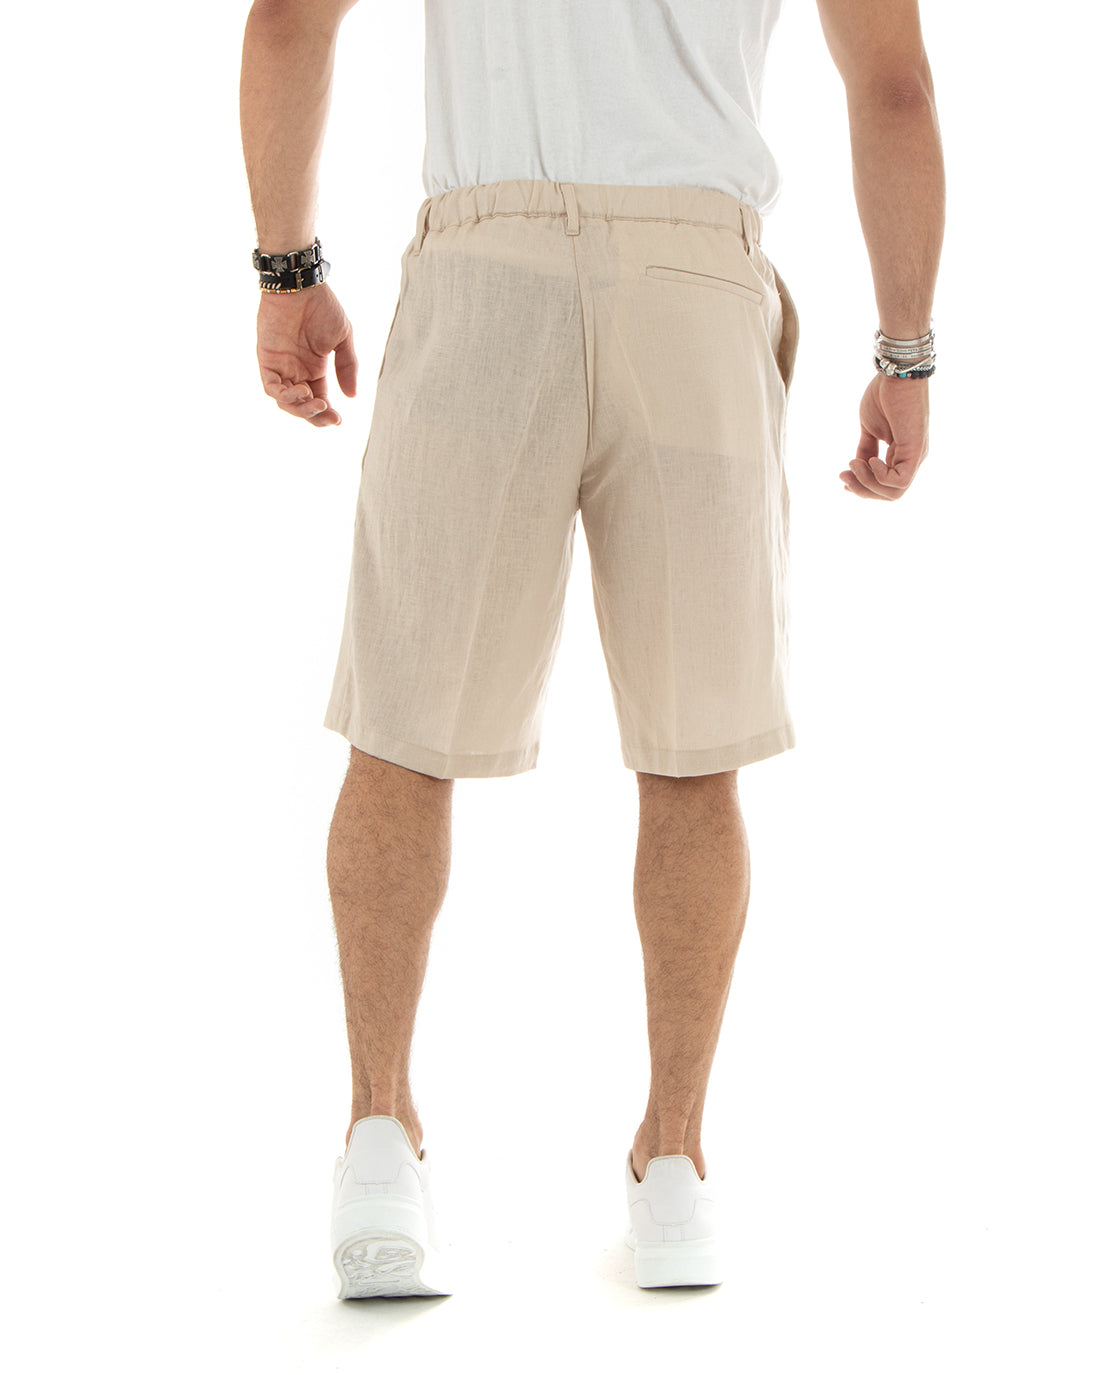 Bermuda Pantaloncino Uomo Corto Lino Tinta Unita Beige Sartoriale Con Laccetto GIOSAL-PC1930A